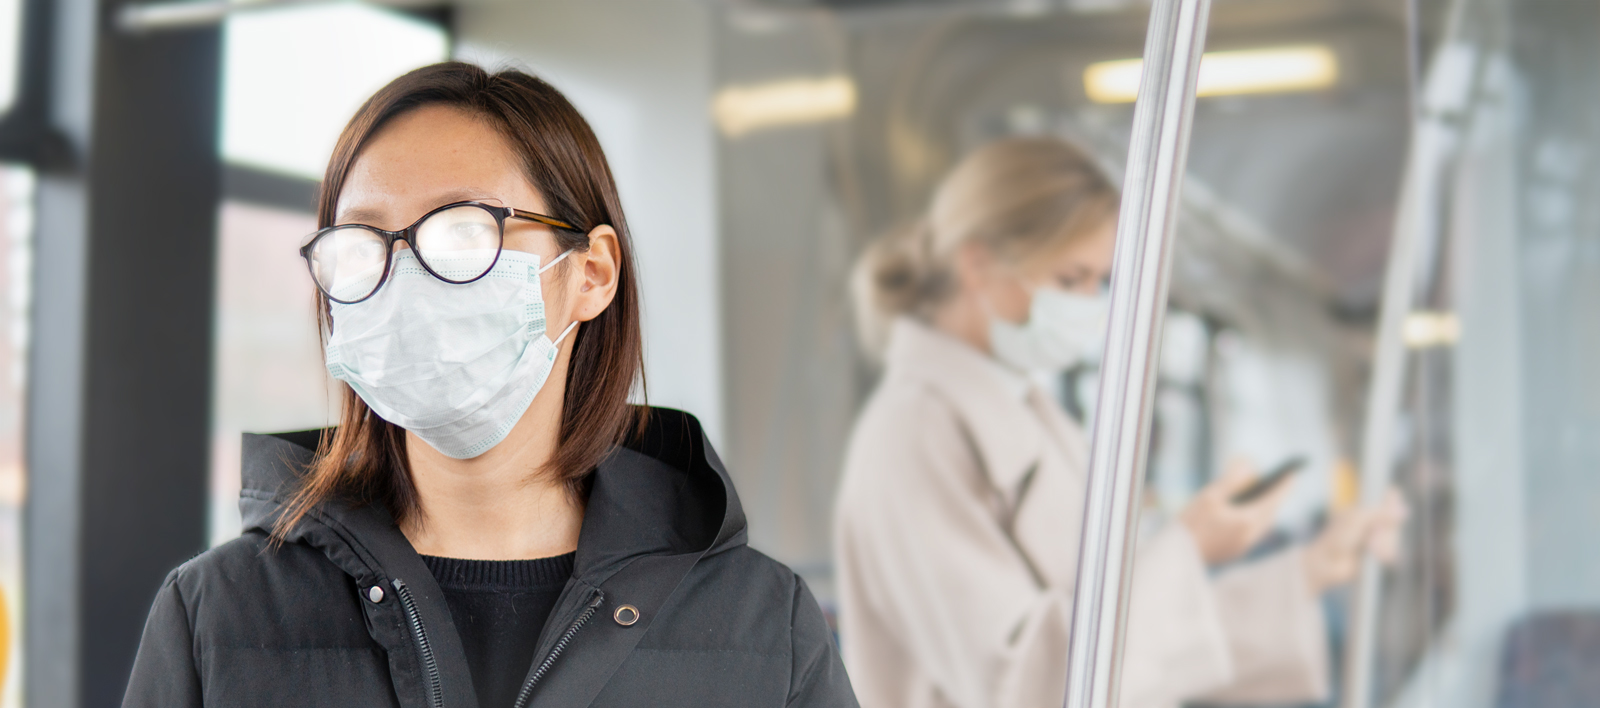 Frau mit beschlagener Brille wegen Atemschutz